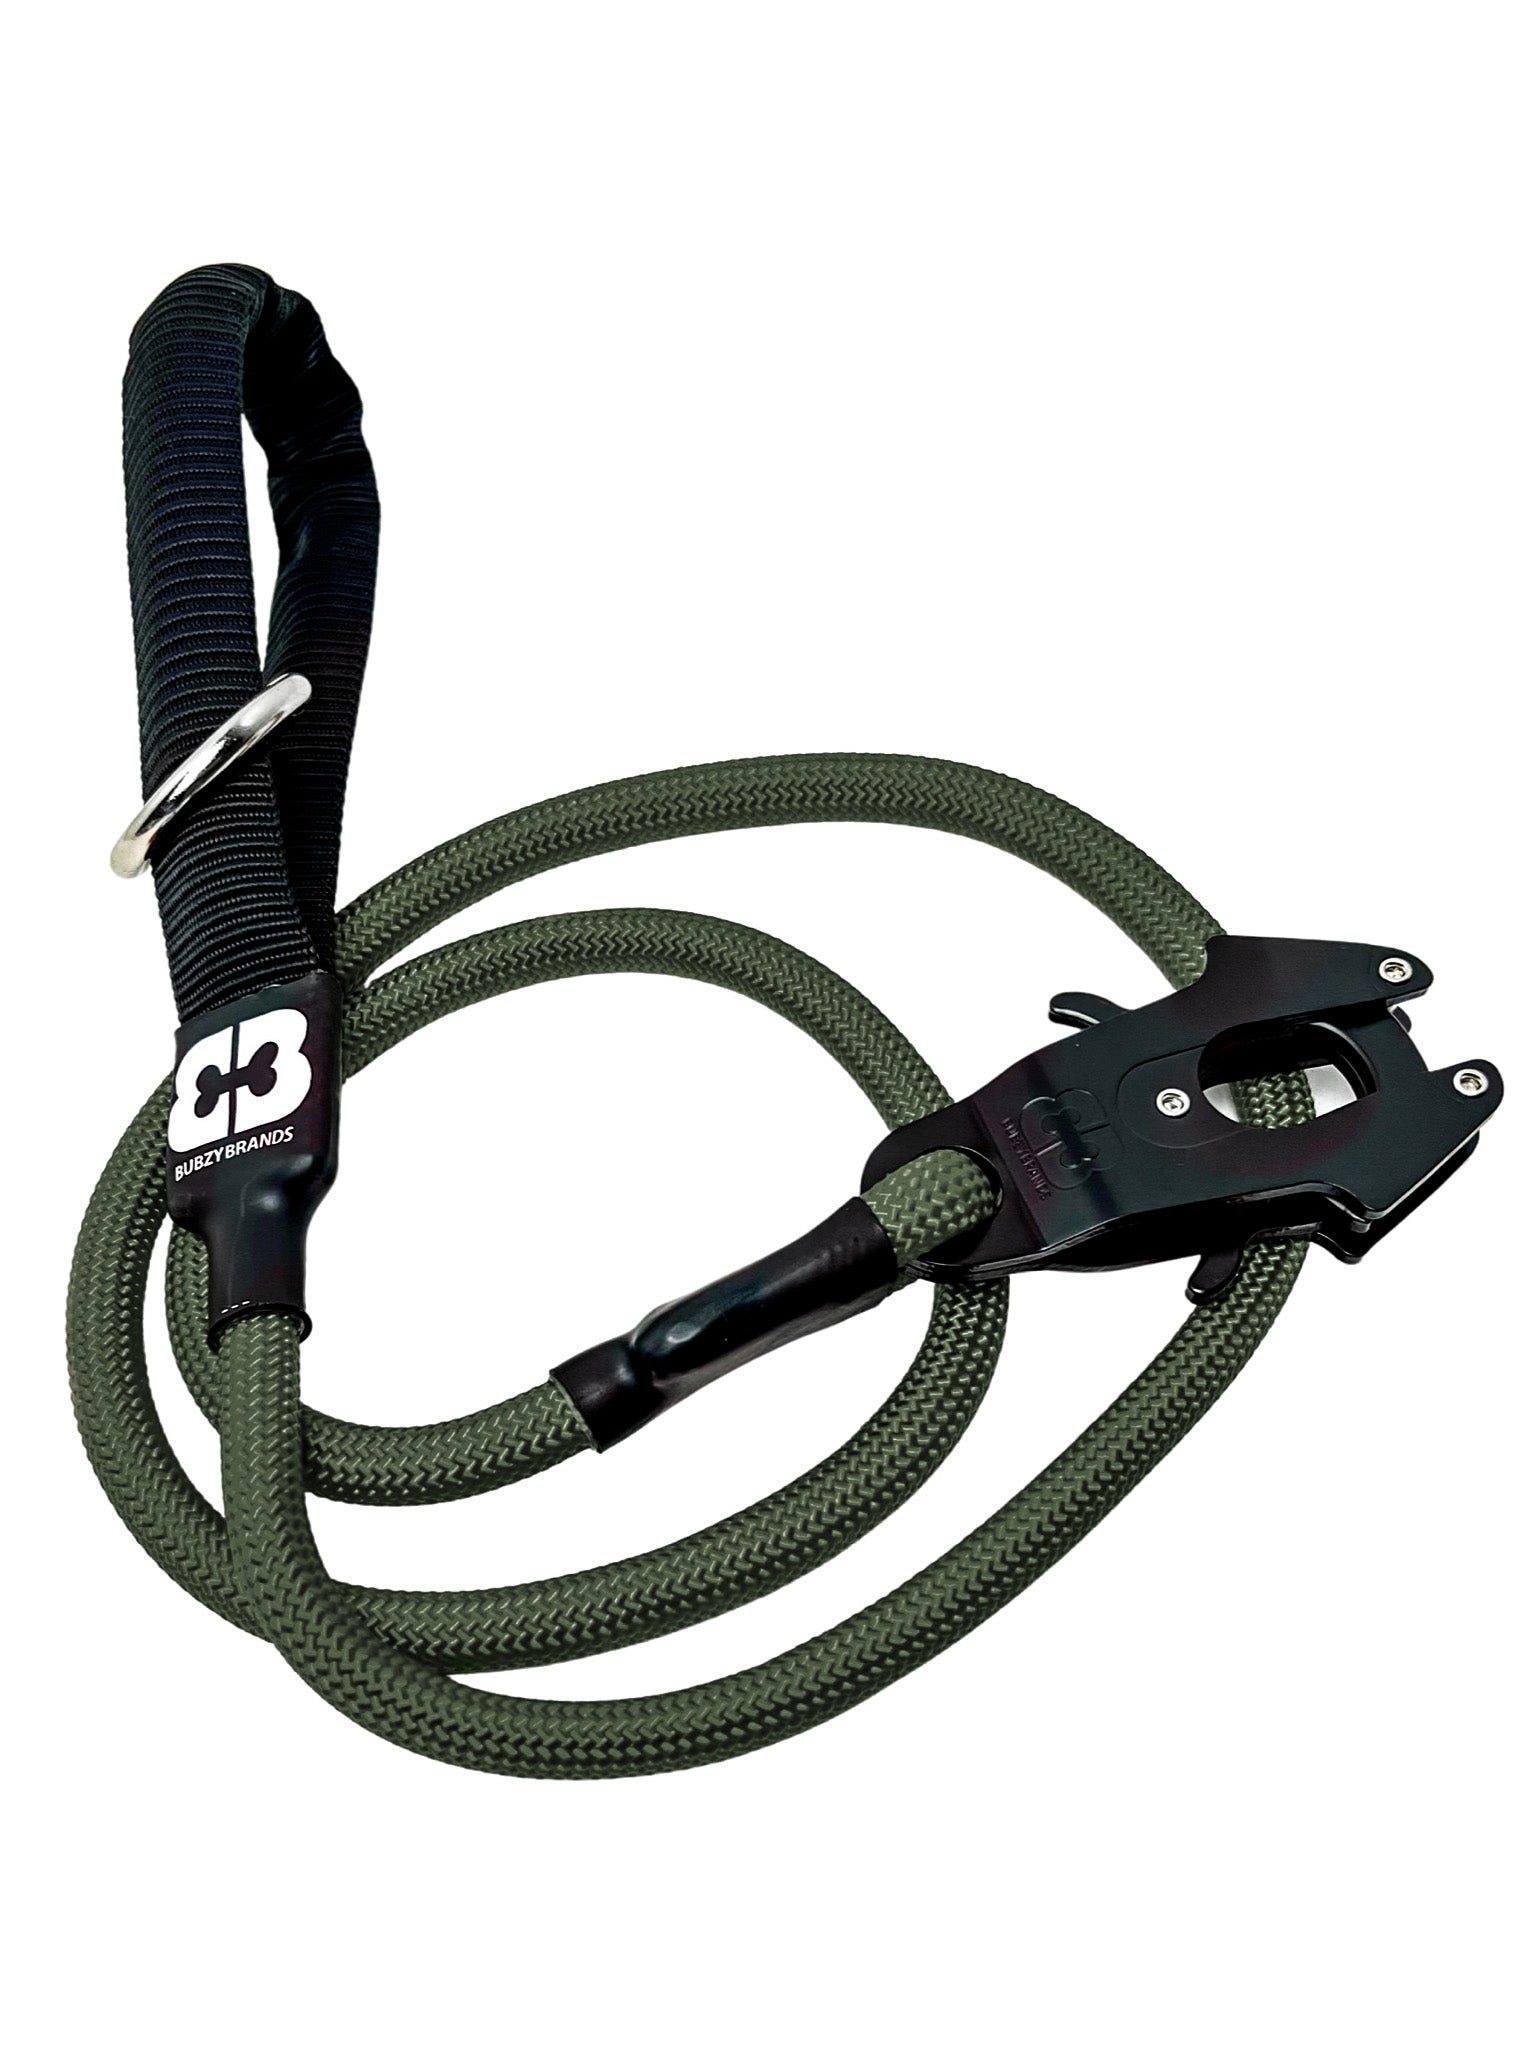 Carbon Fiber Pattern Bag Strap - 1.5 Wide Nylon - Adjustable Length - Dog  Leash Style #19 Hooks